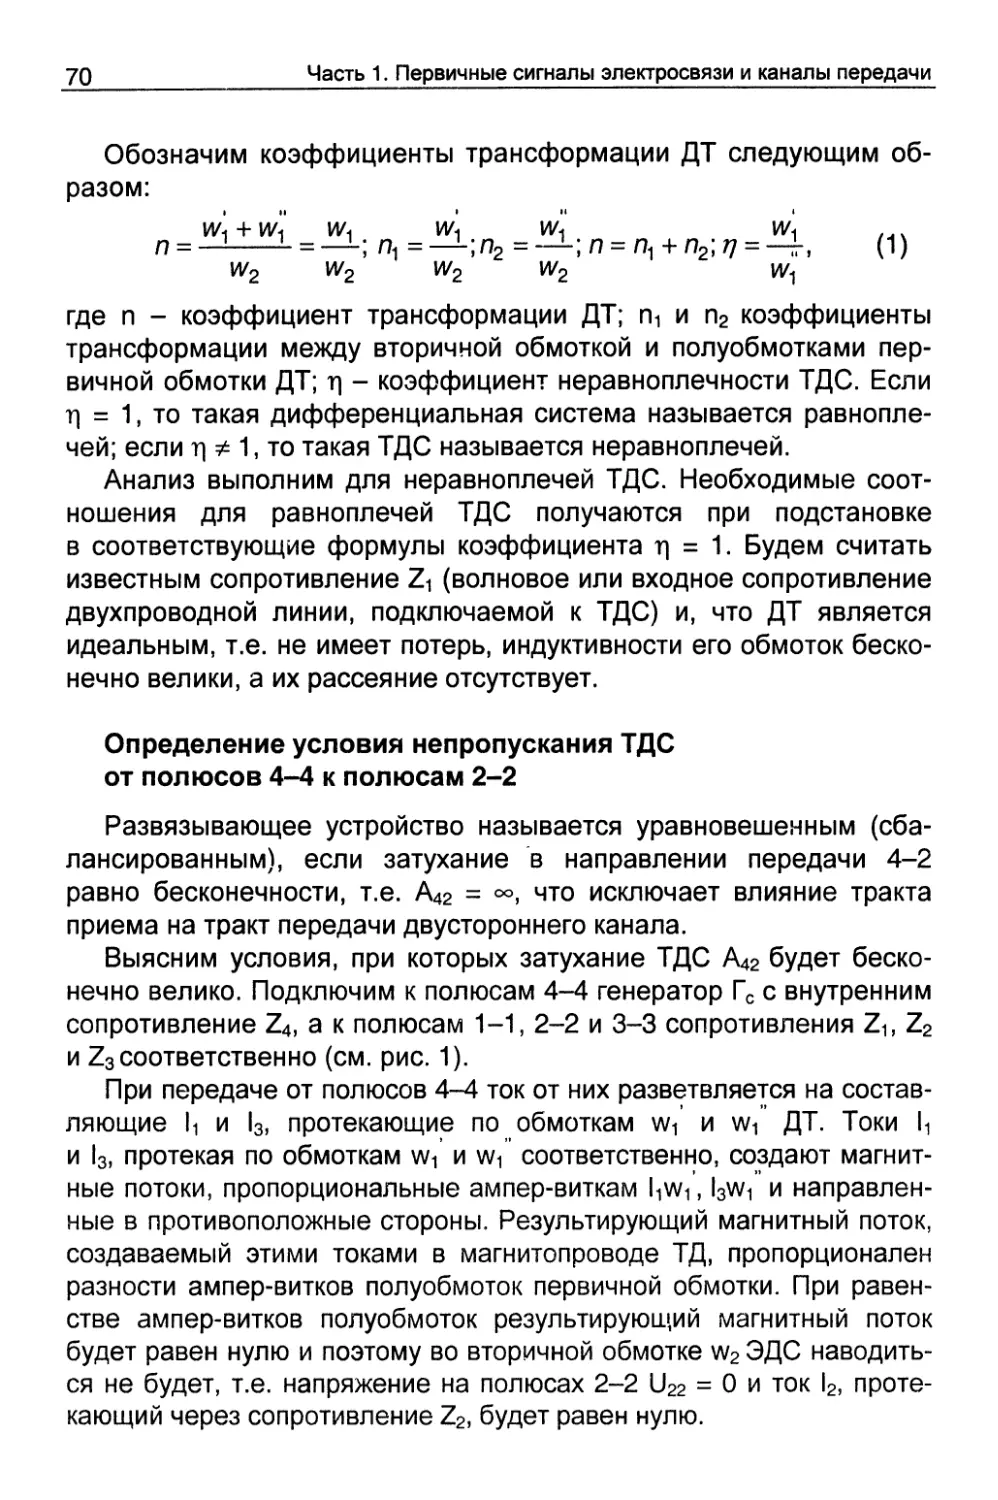 Определение условий непропускания ТДС от полюсов 4-4 к полюсам 2-2